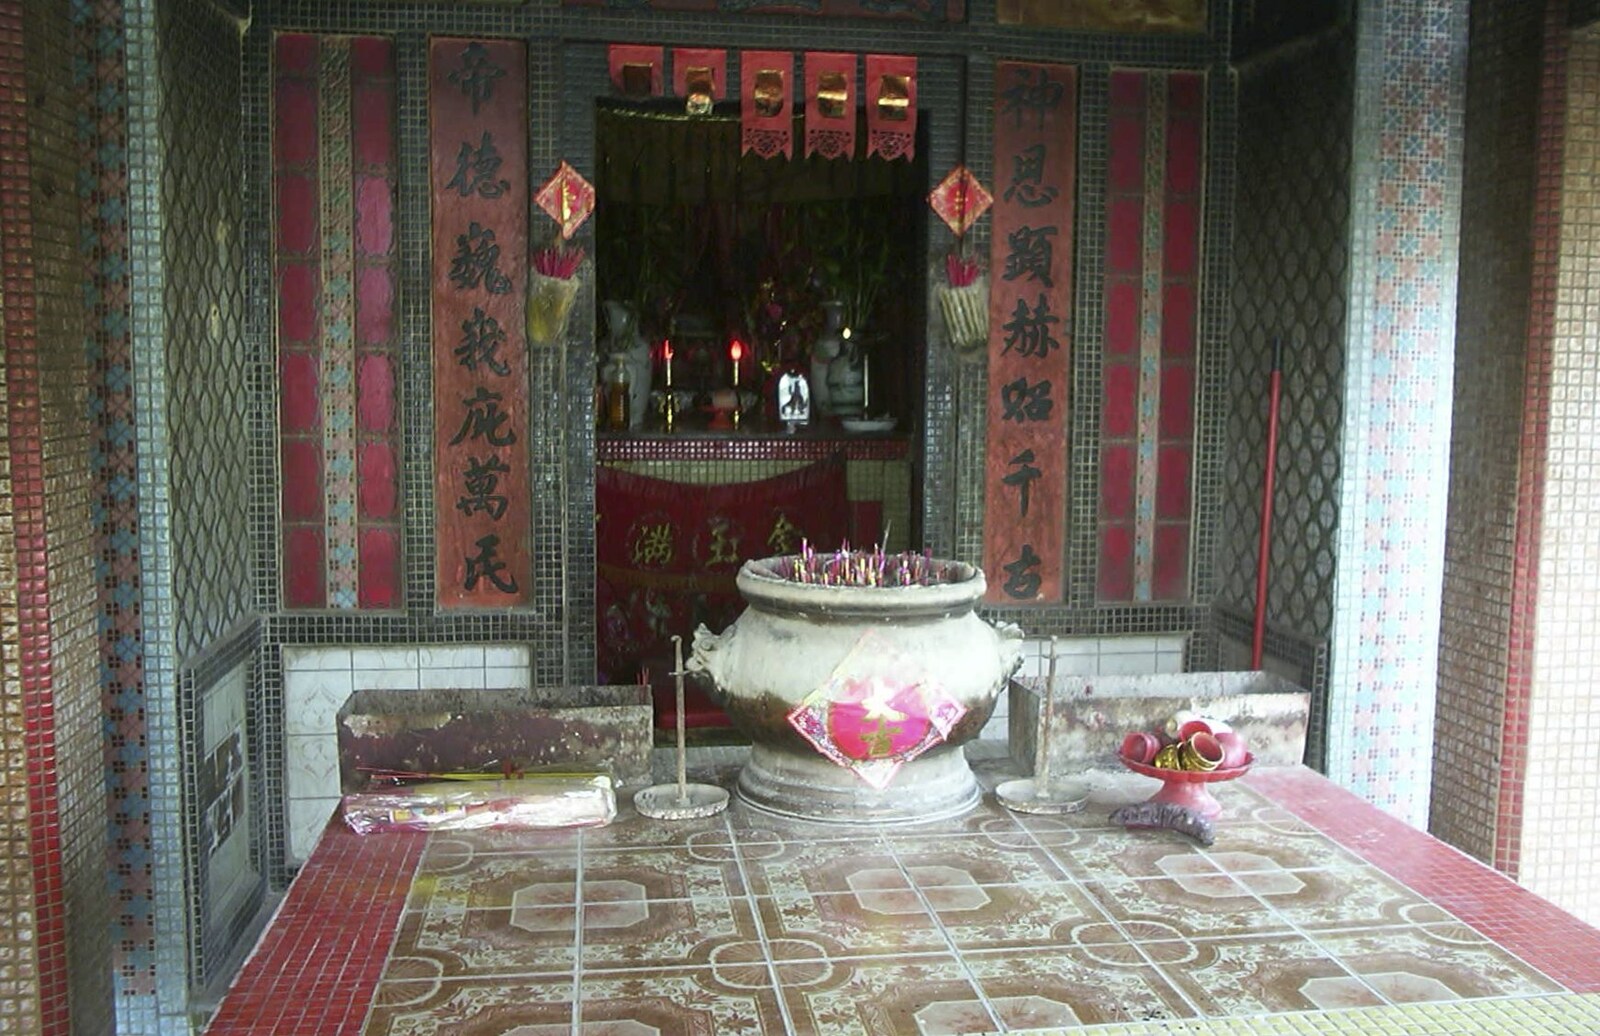 Lamma Island, Hong Kong, China - 20th August 2001: Incense pots and a shrine